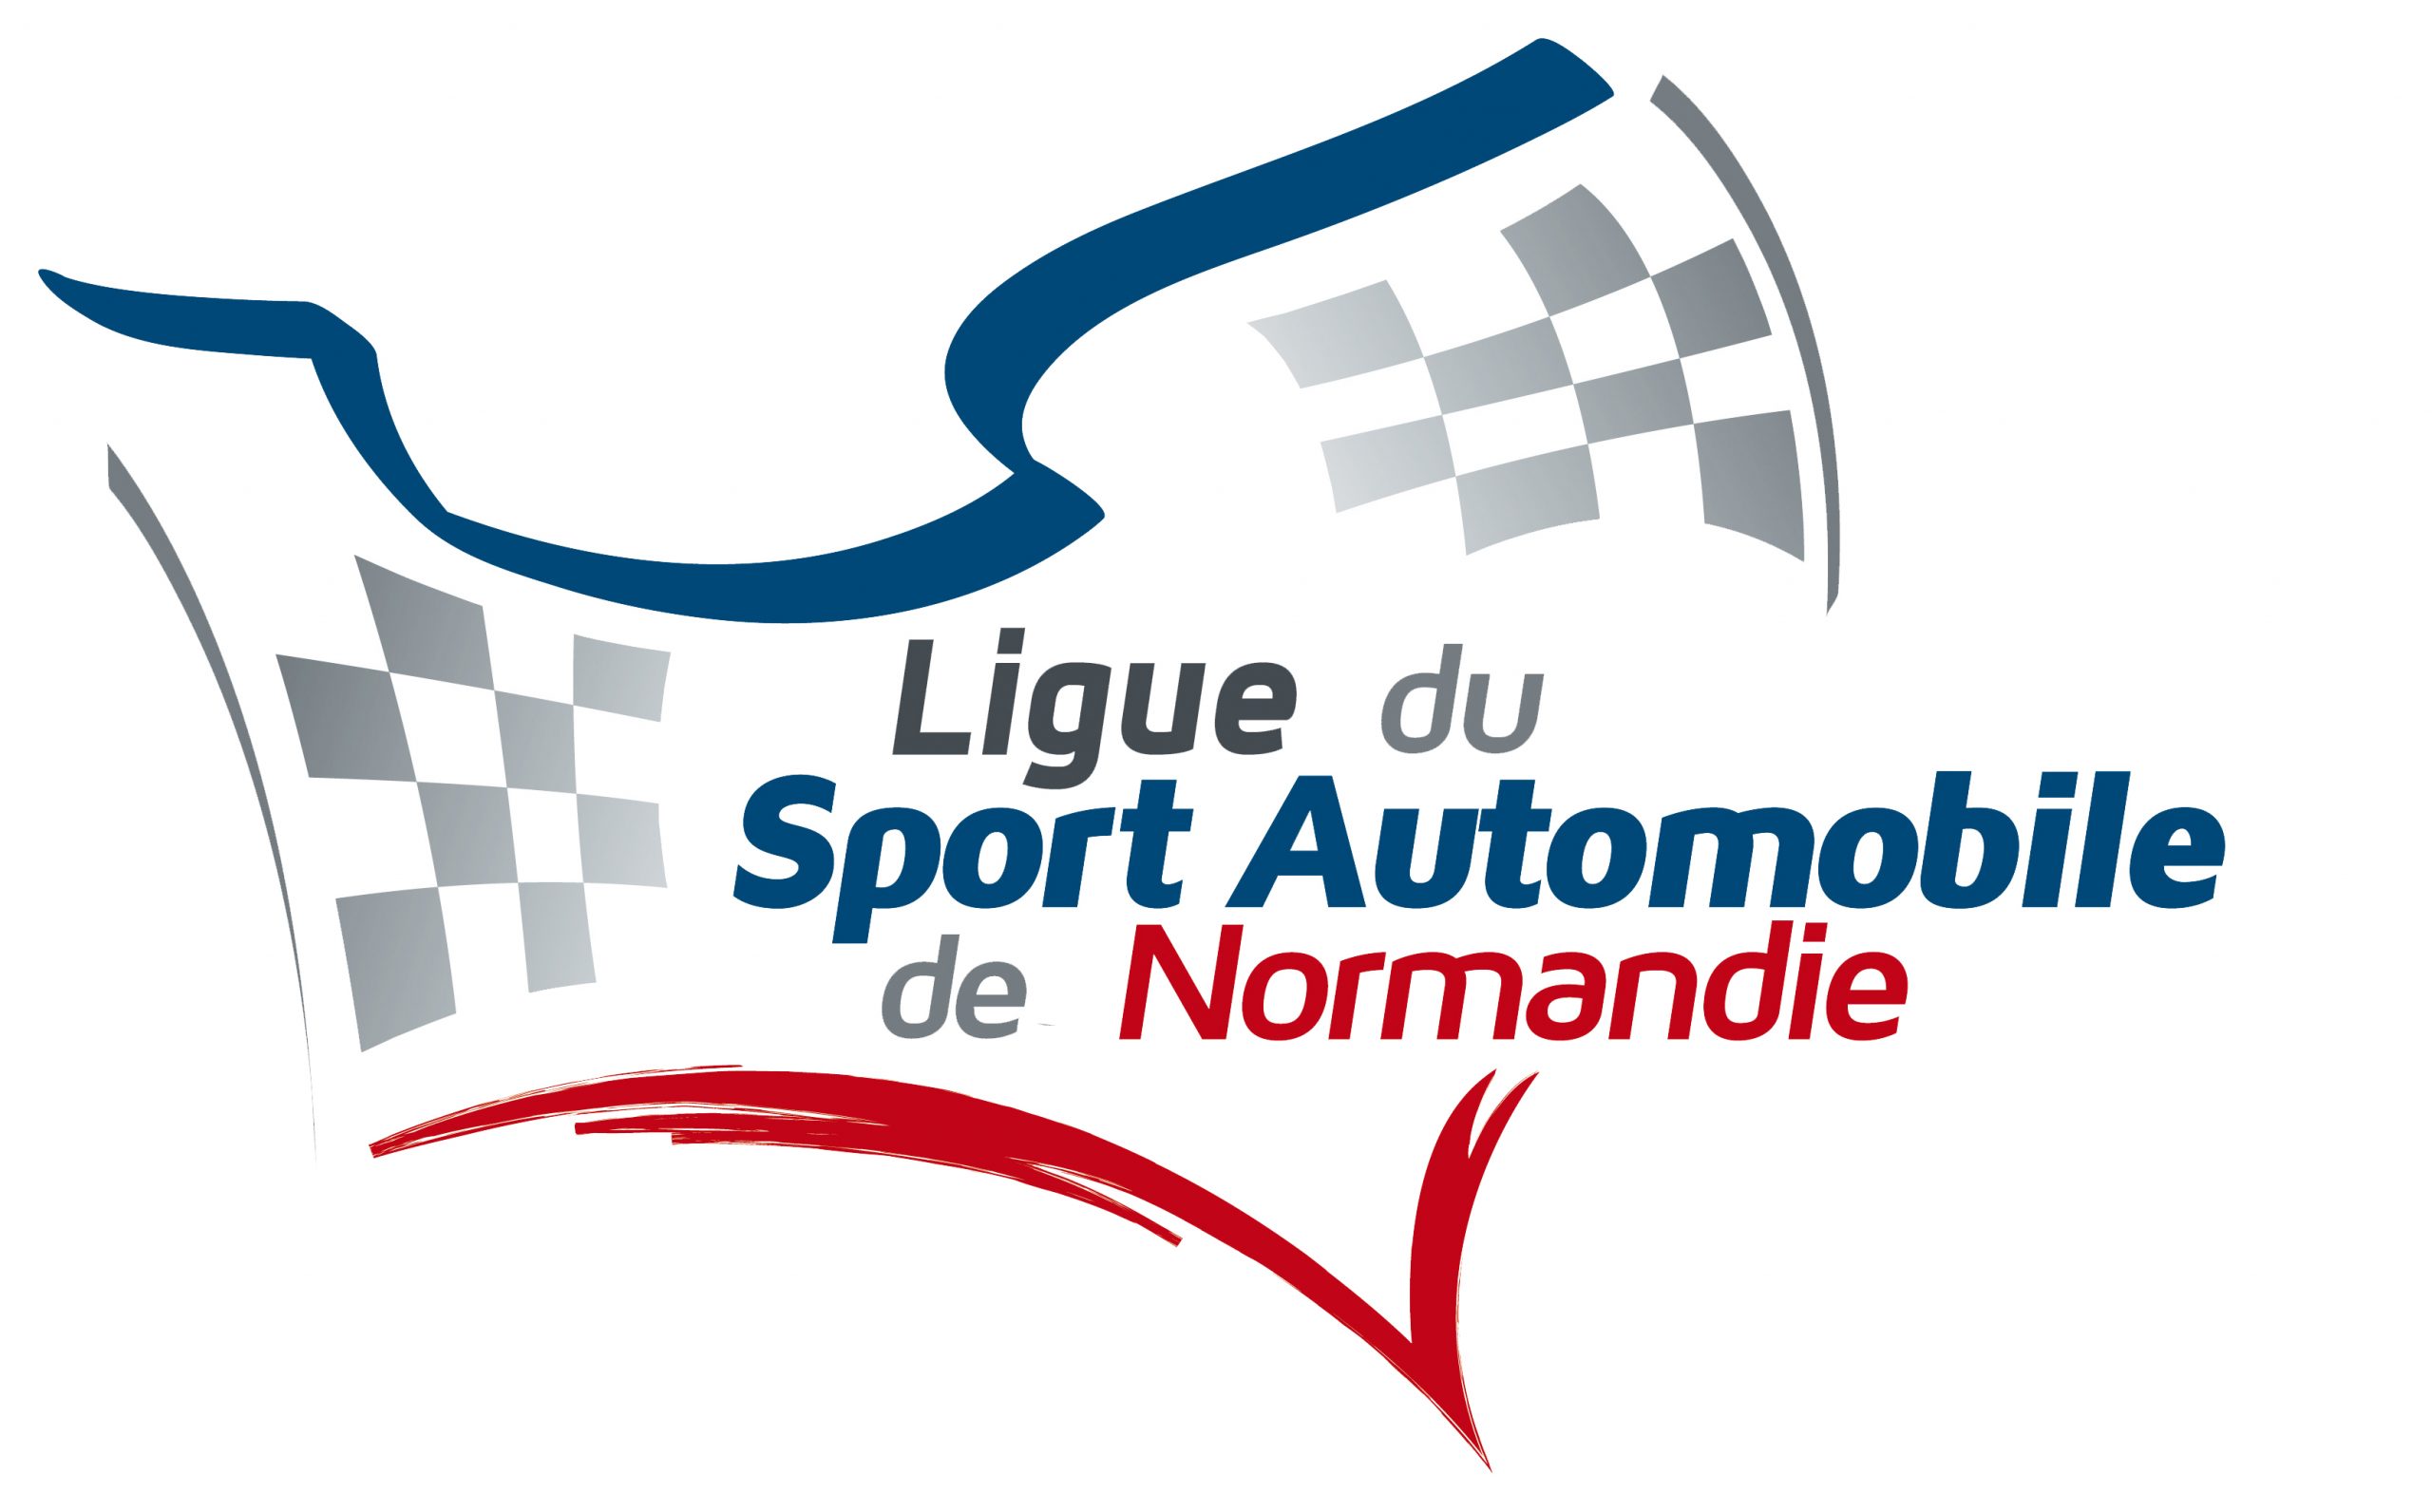 Ligue du Sport Automobile de Normandie